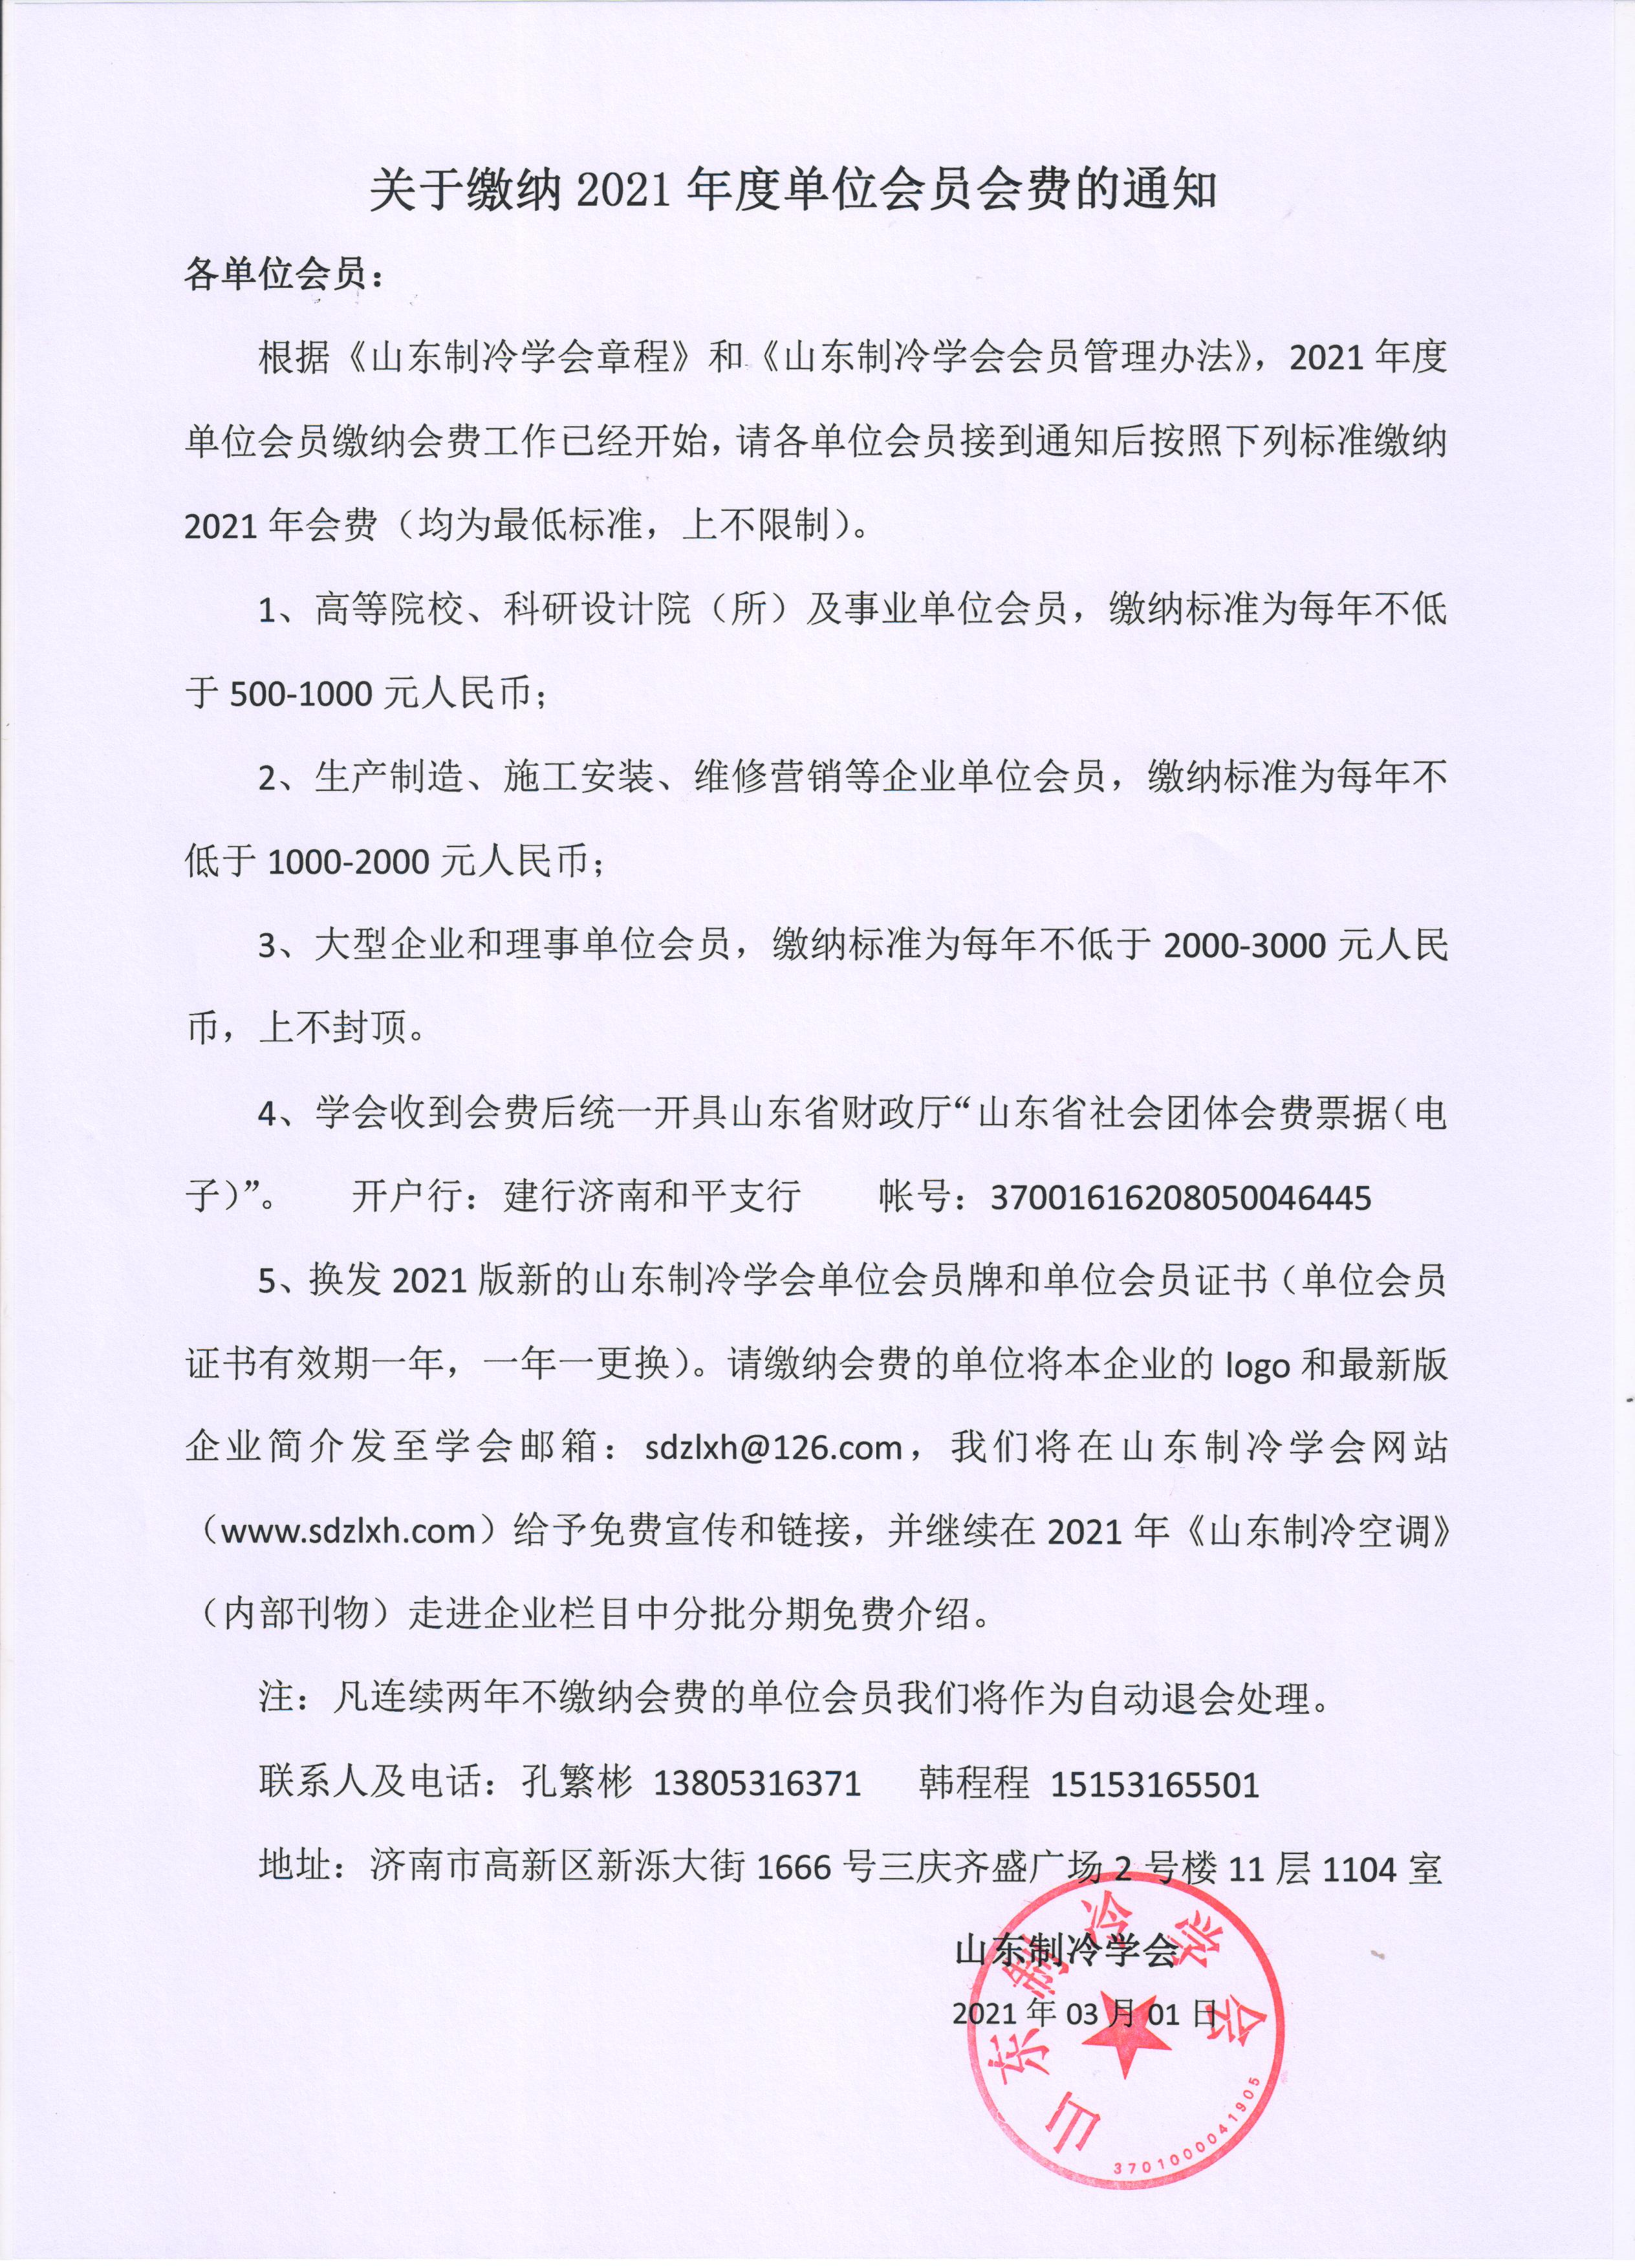 九州体育(中国)有限公司官网缴纳2021年度单位会员会费的通知